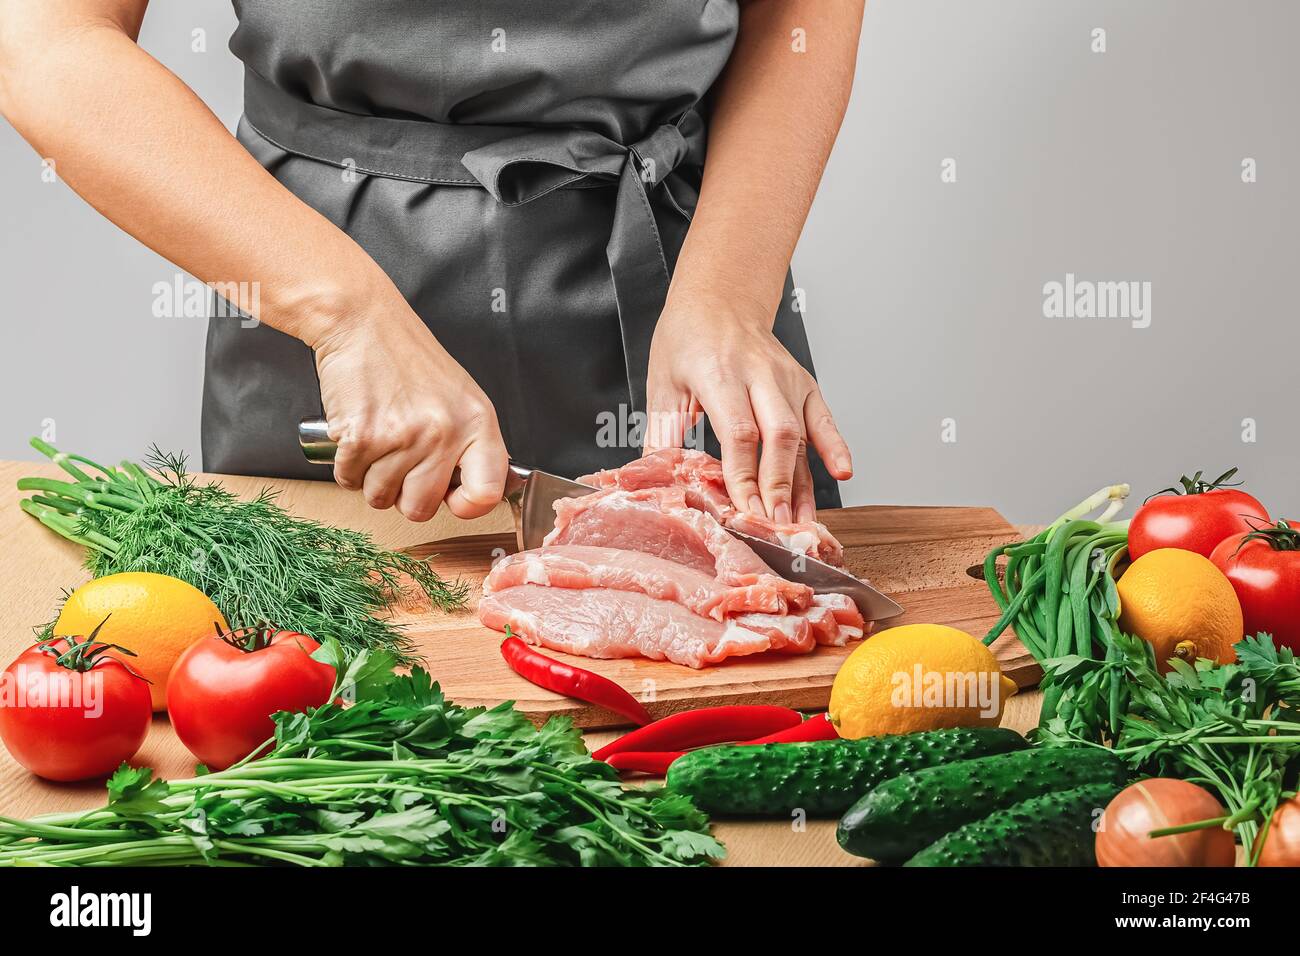 Eine Frau in einer grauen Schürze schneidet ein Stück Fleisch mit einem Messer auf einem Holzbrett. Es gibt Zwiebeln, Tomaten, Dill, Petersilie, Tomaten, Rote Paprika und Stockfoto